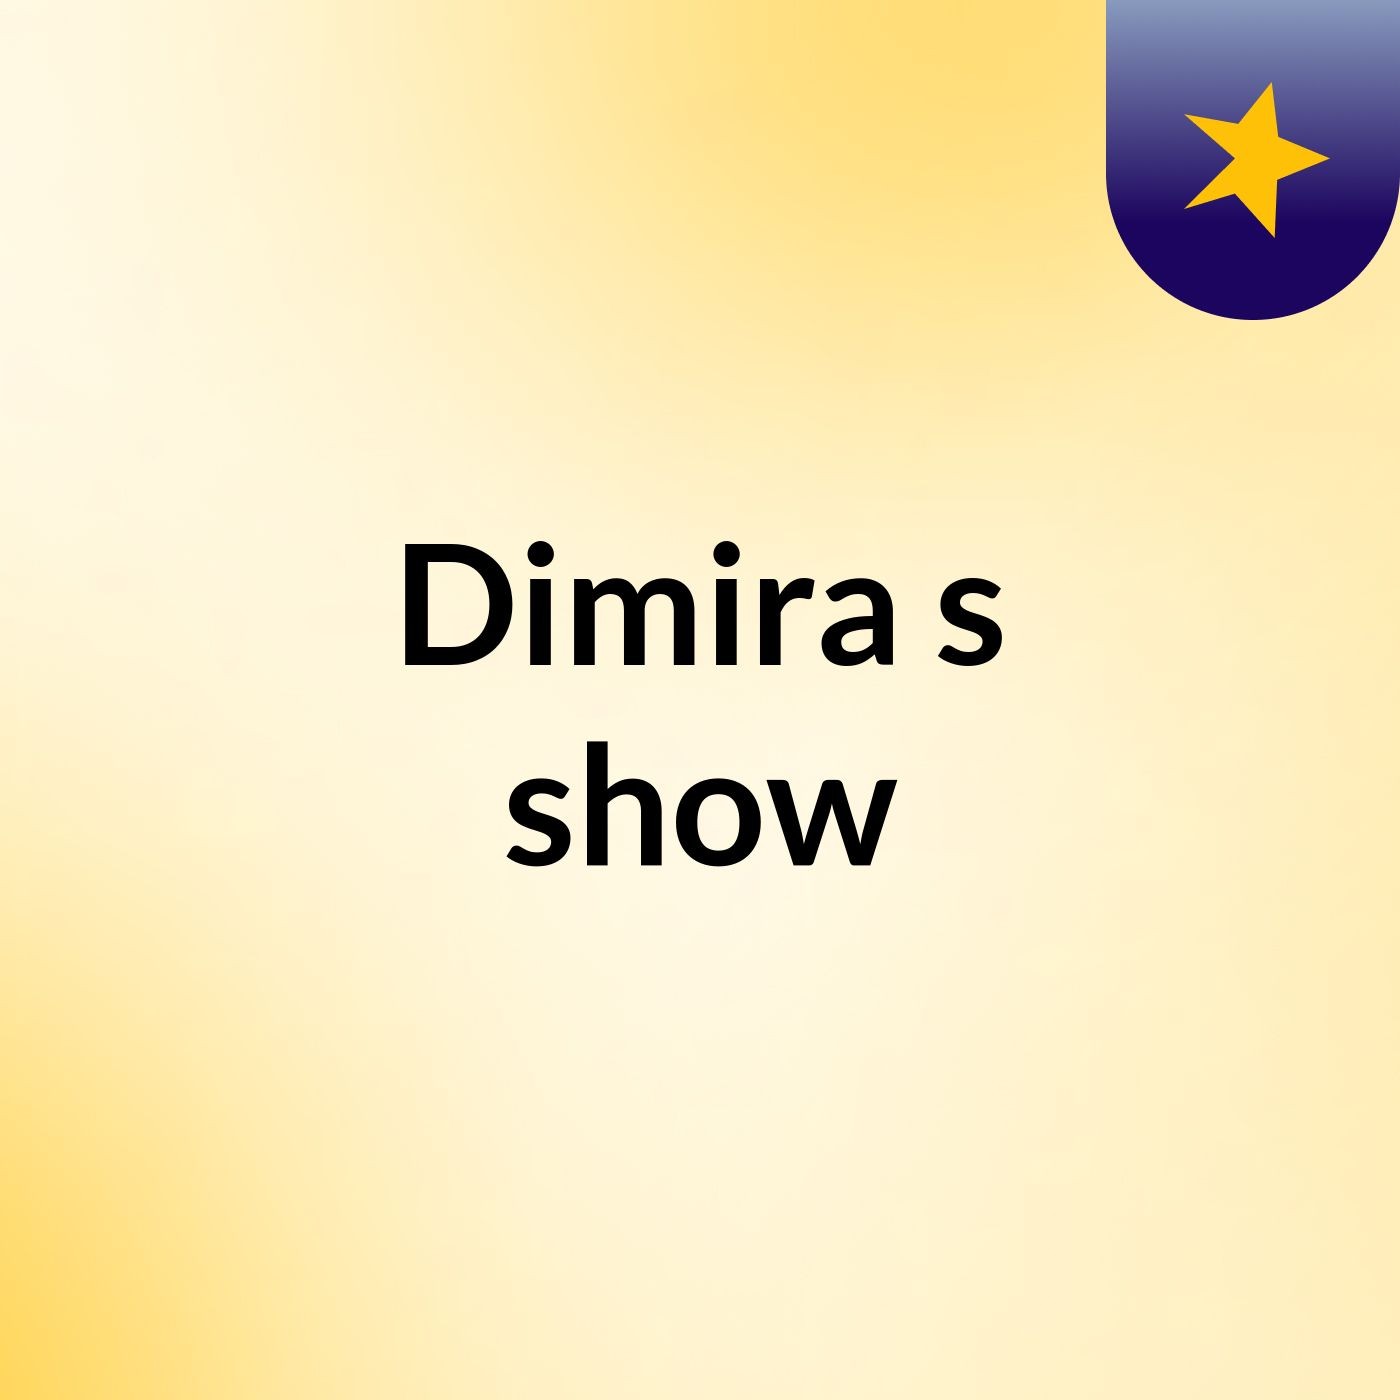 Dimira's show